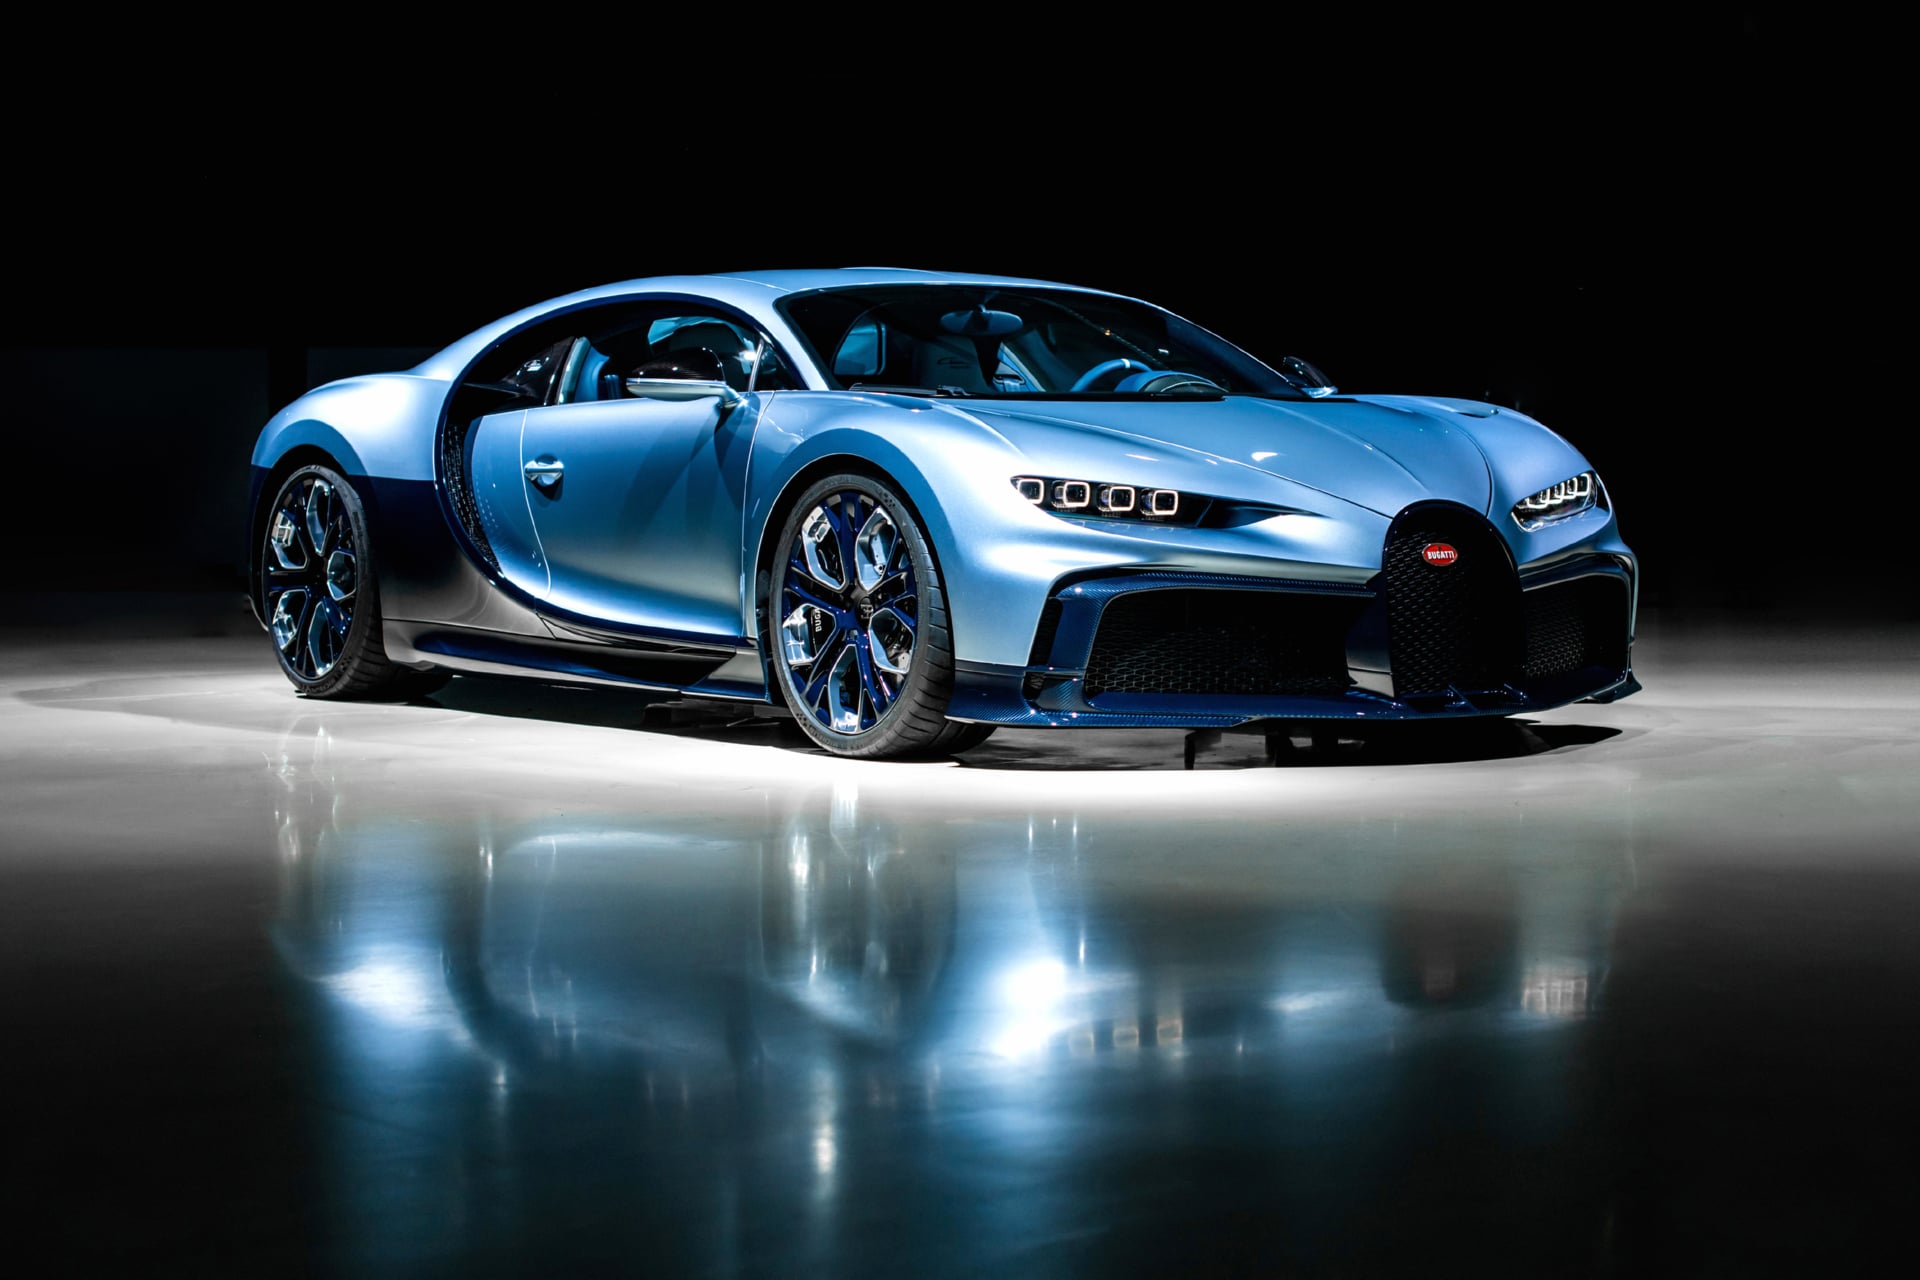 Bugatti Chiron Profilee at 1600 x 1200 size wallpapers HD quality